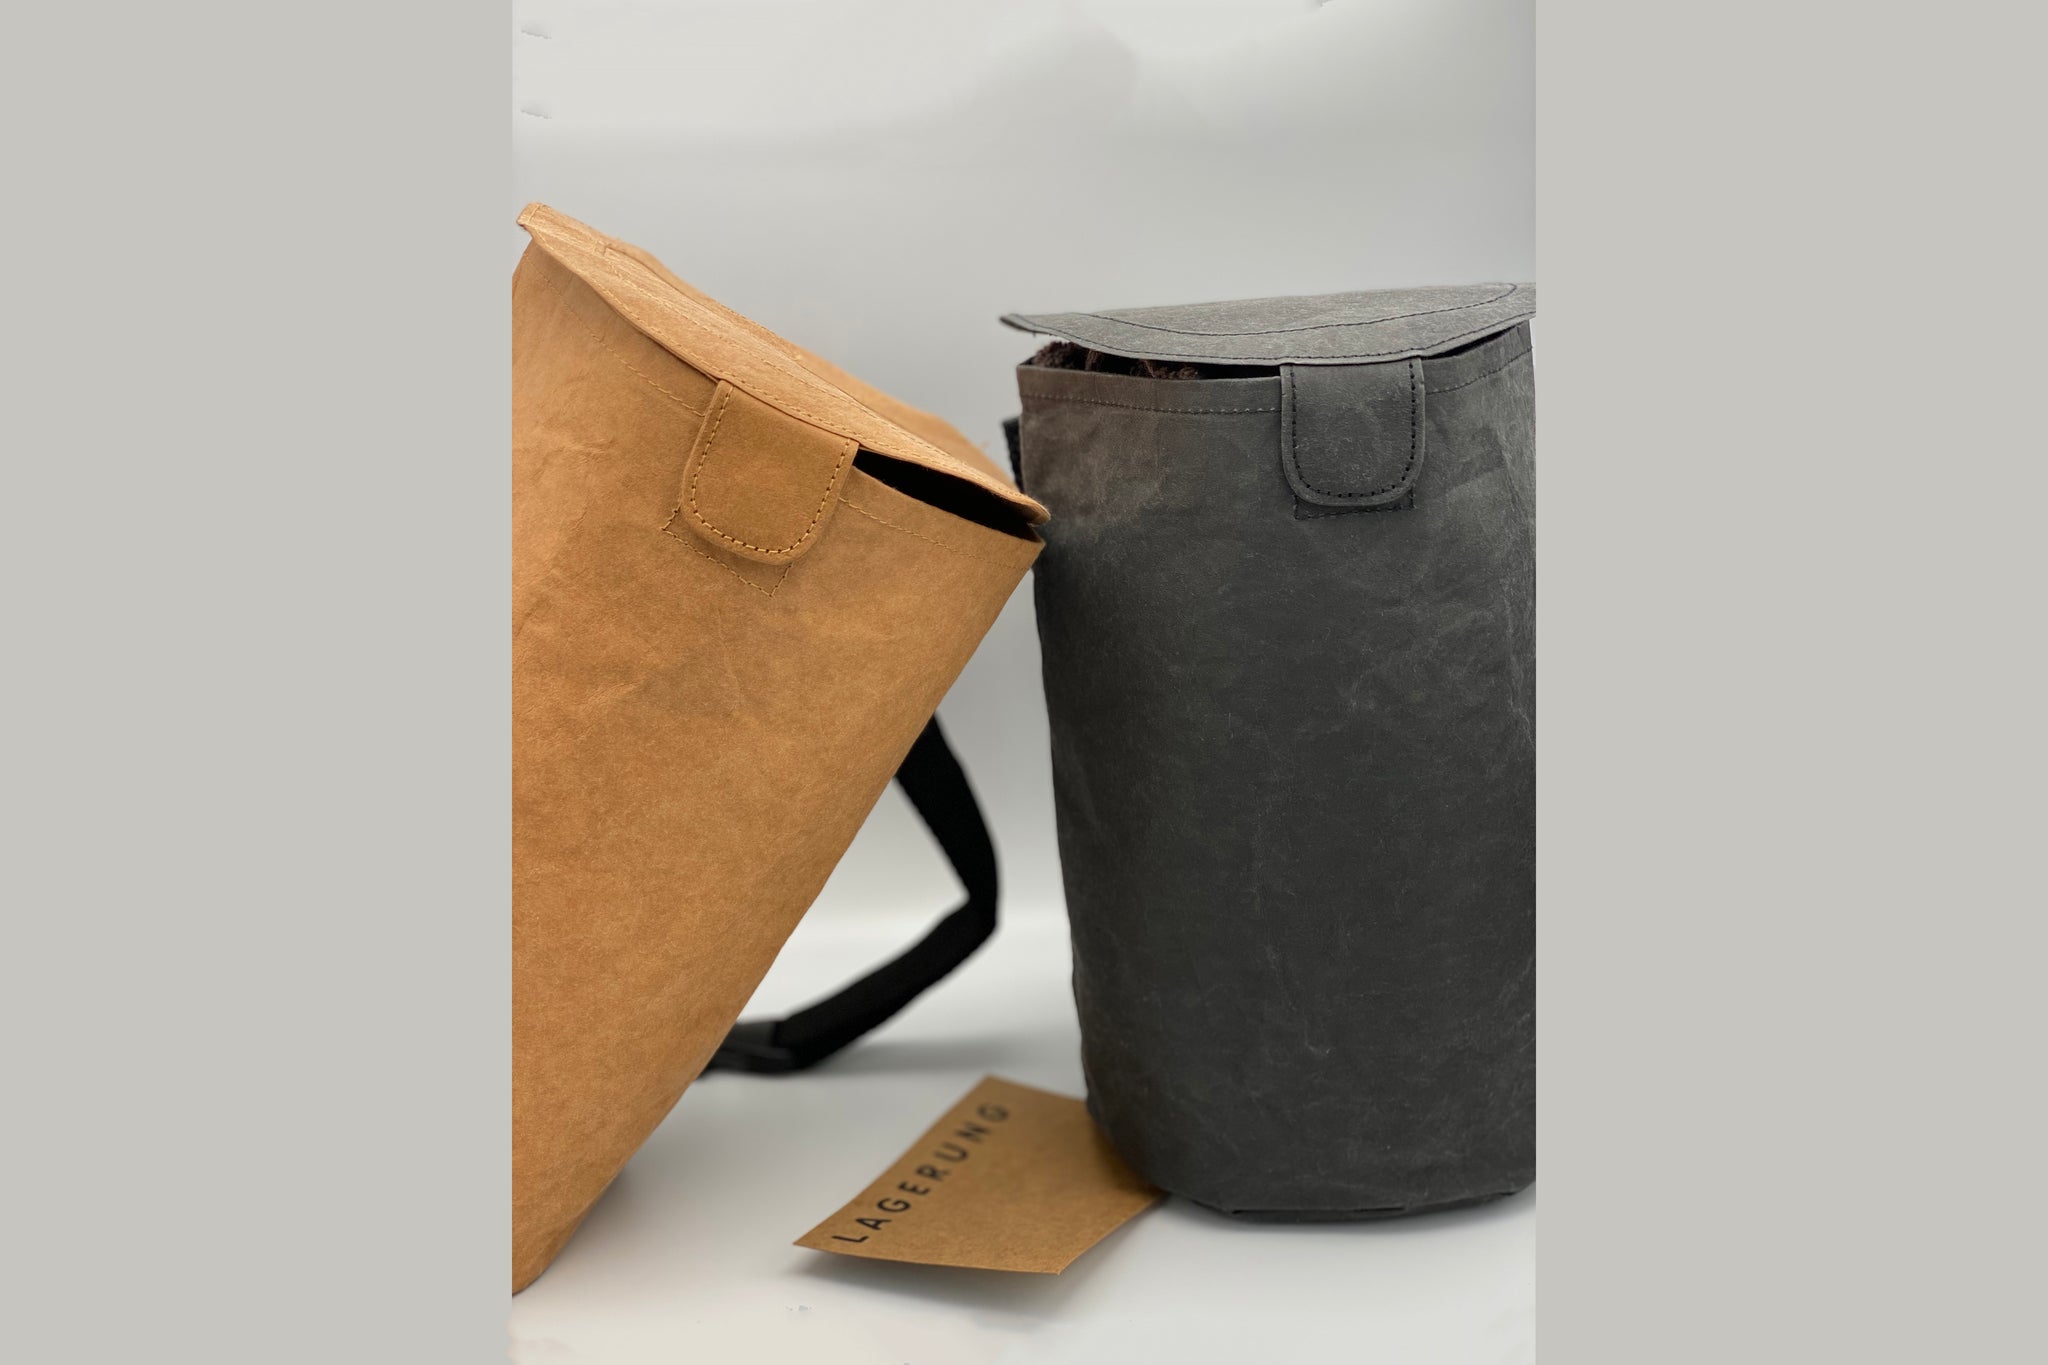 Autobahn Accessories Lagerung vegan leather multipurpose bag –  www.